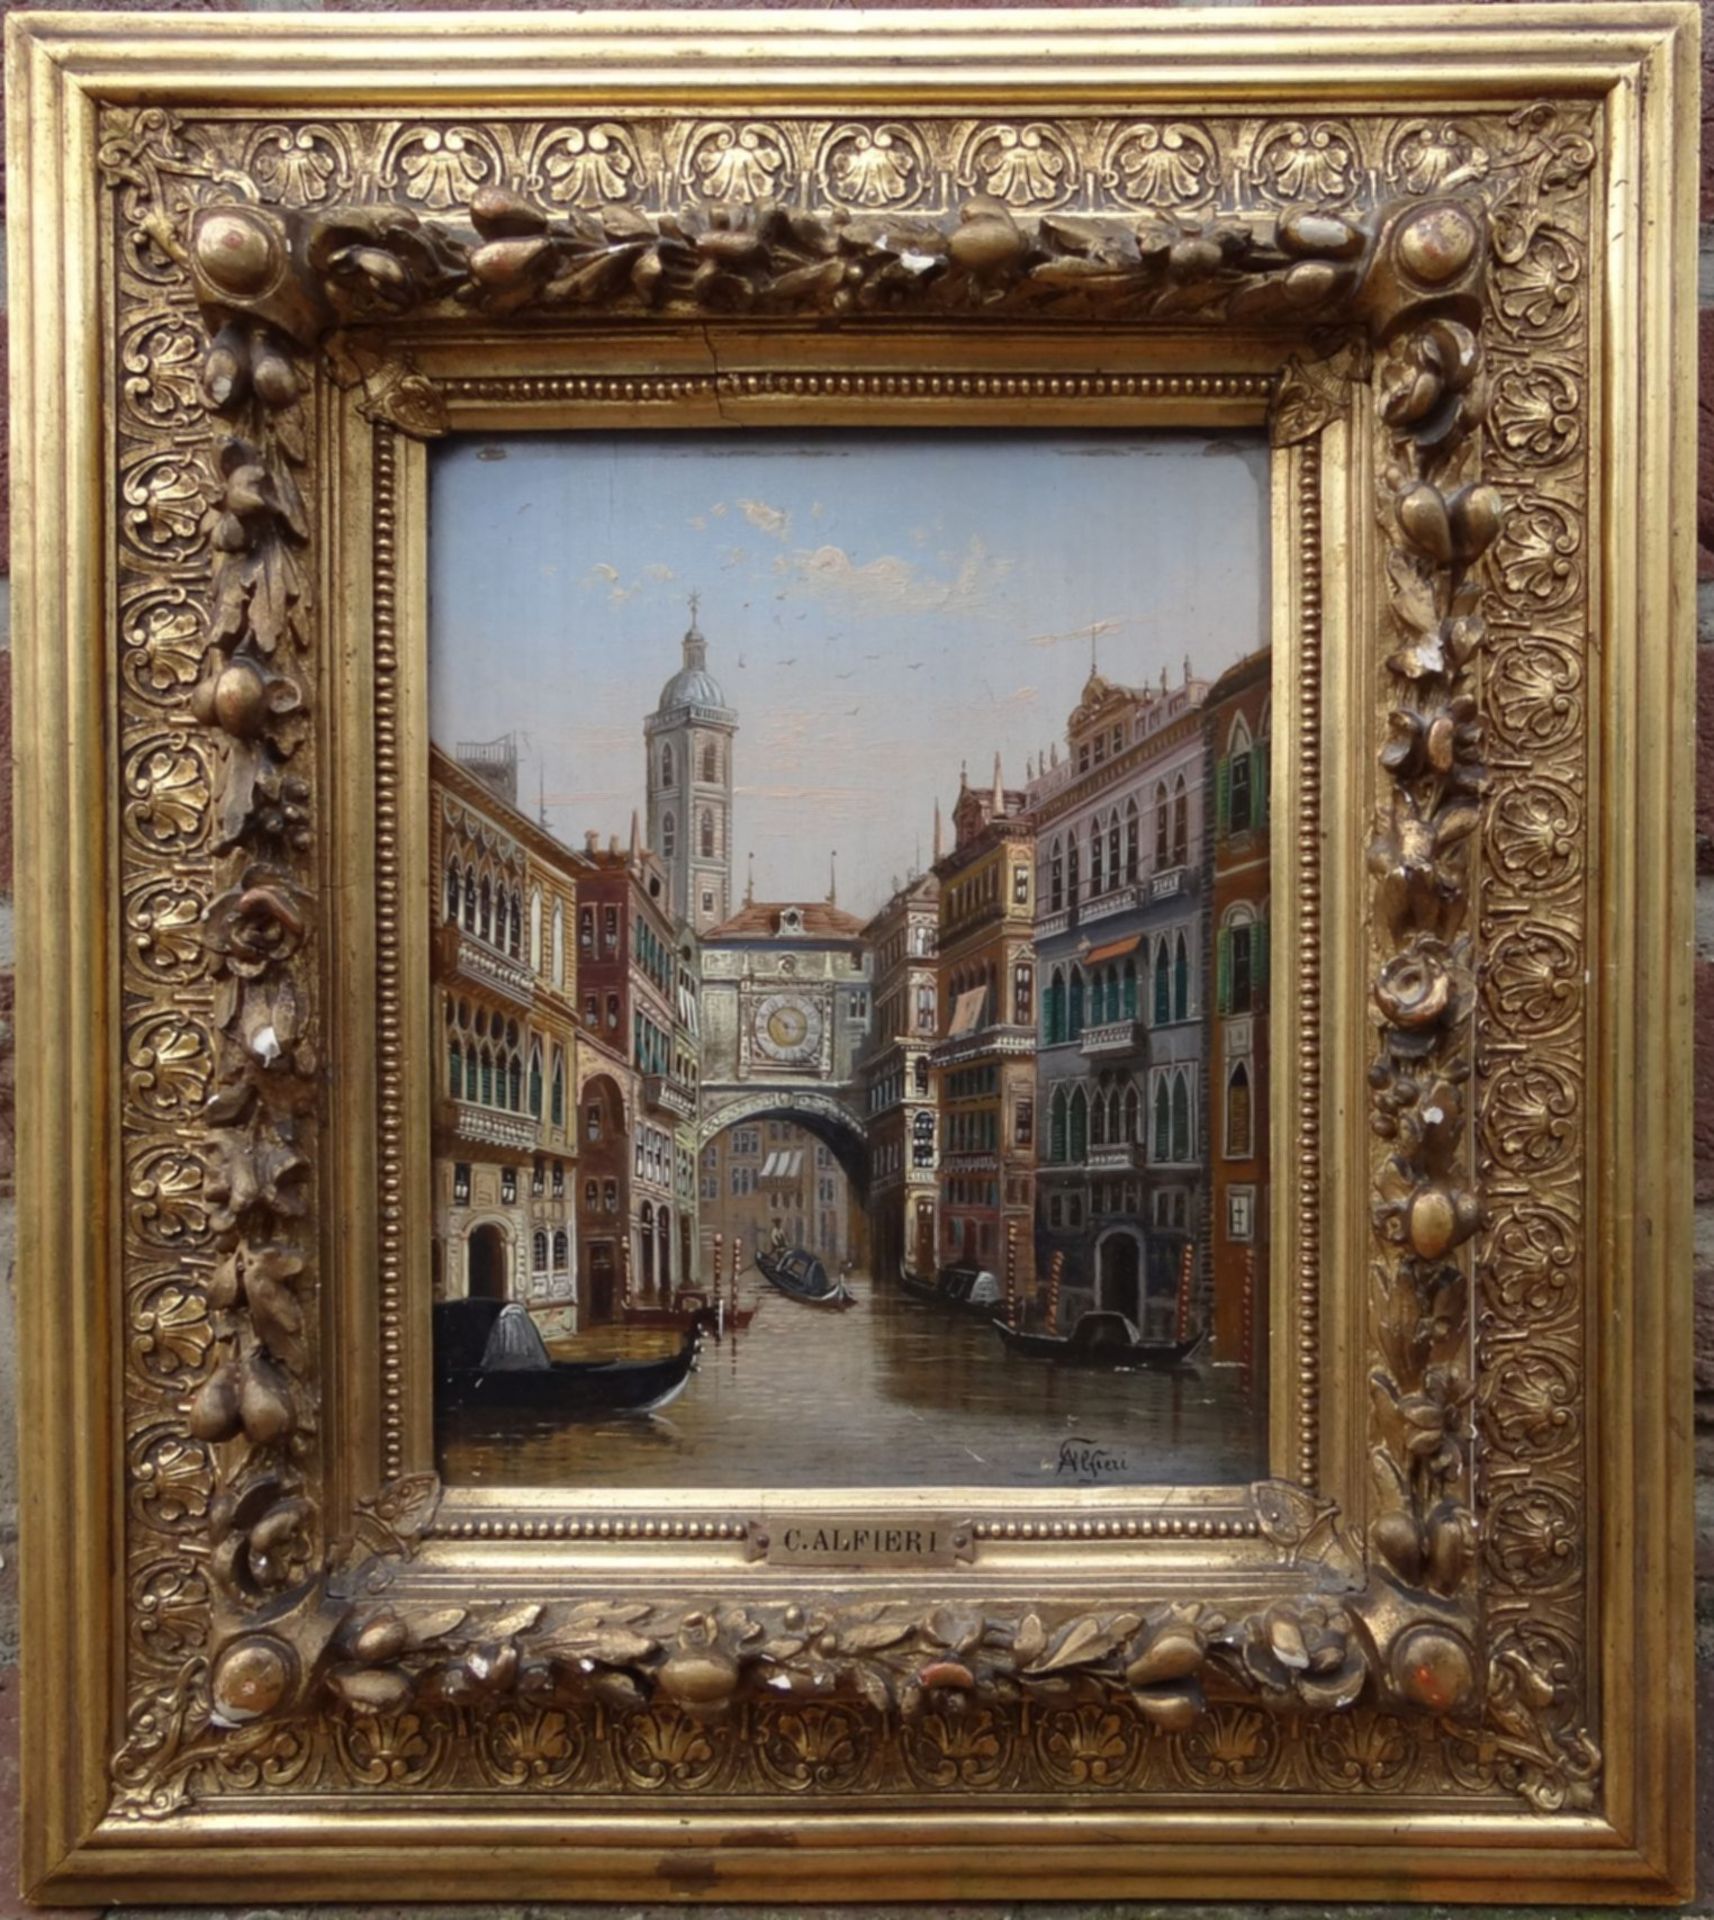 C. ALFIERI (XIX-XX) "Ansicht eines Kanales in Venedig", Öl/Holz, kleine Kratzer etc., 26x21 cm, - Bild 2 aus 10